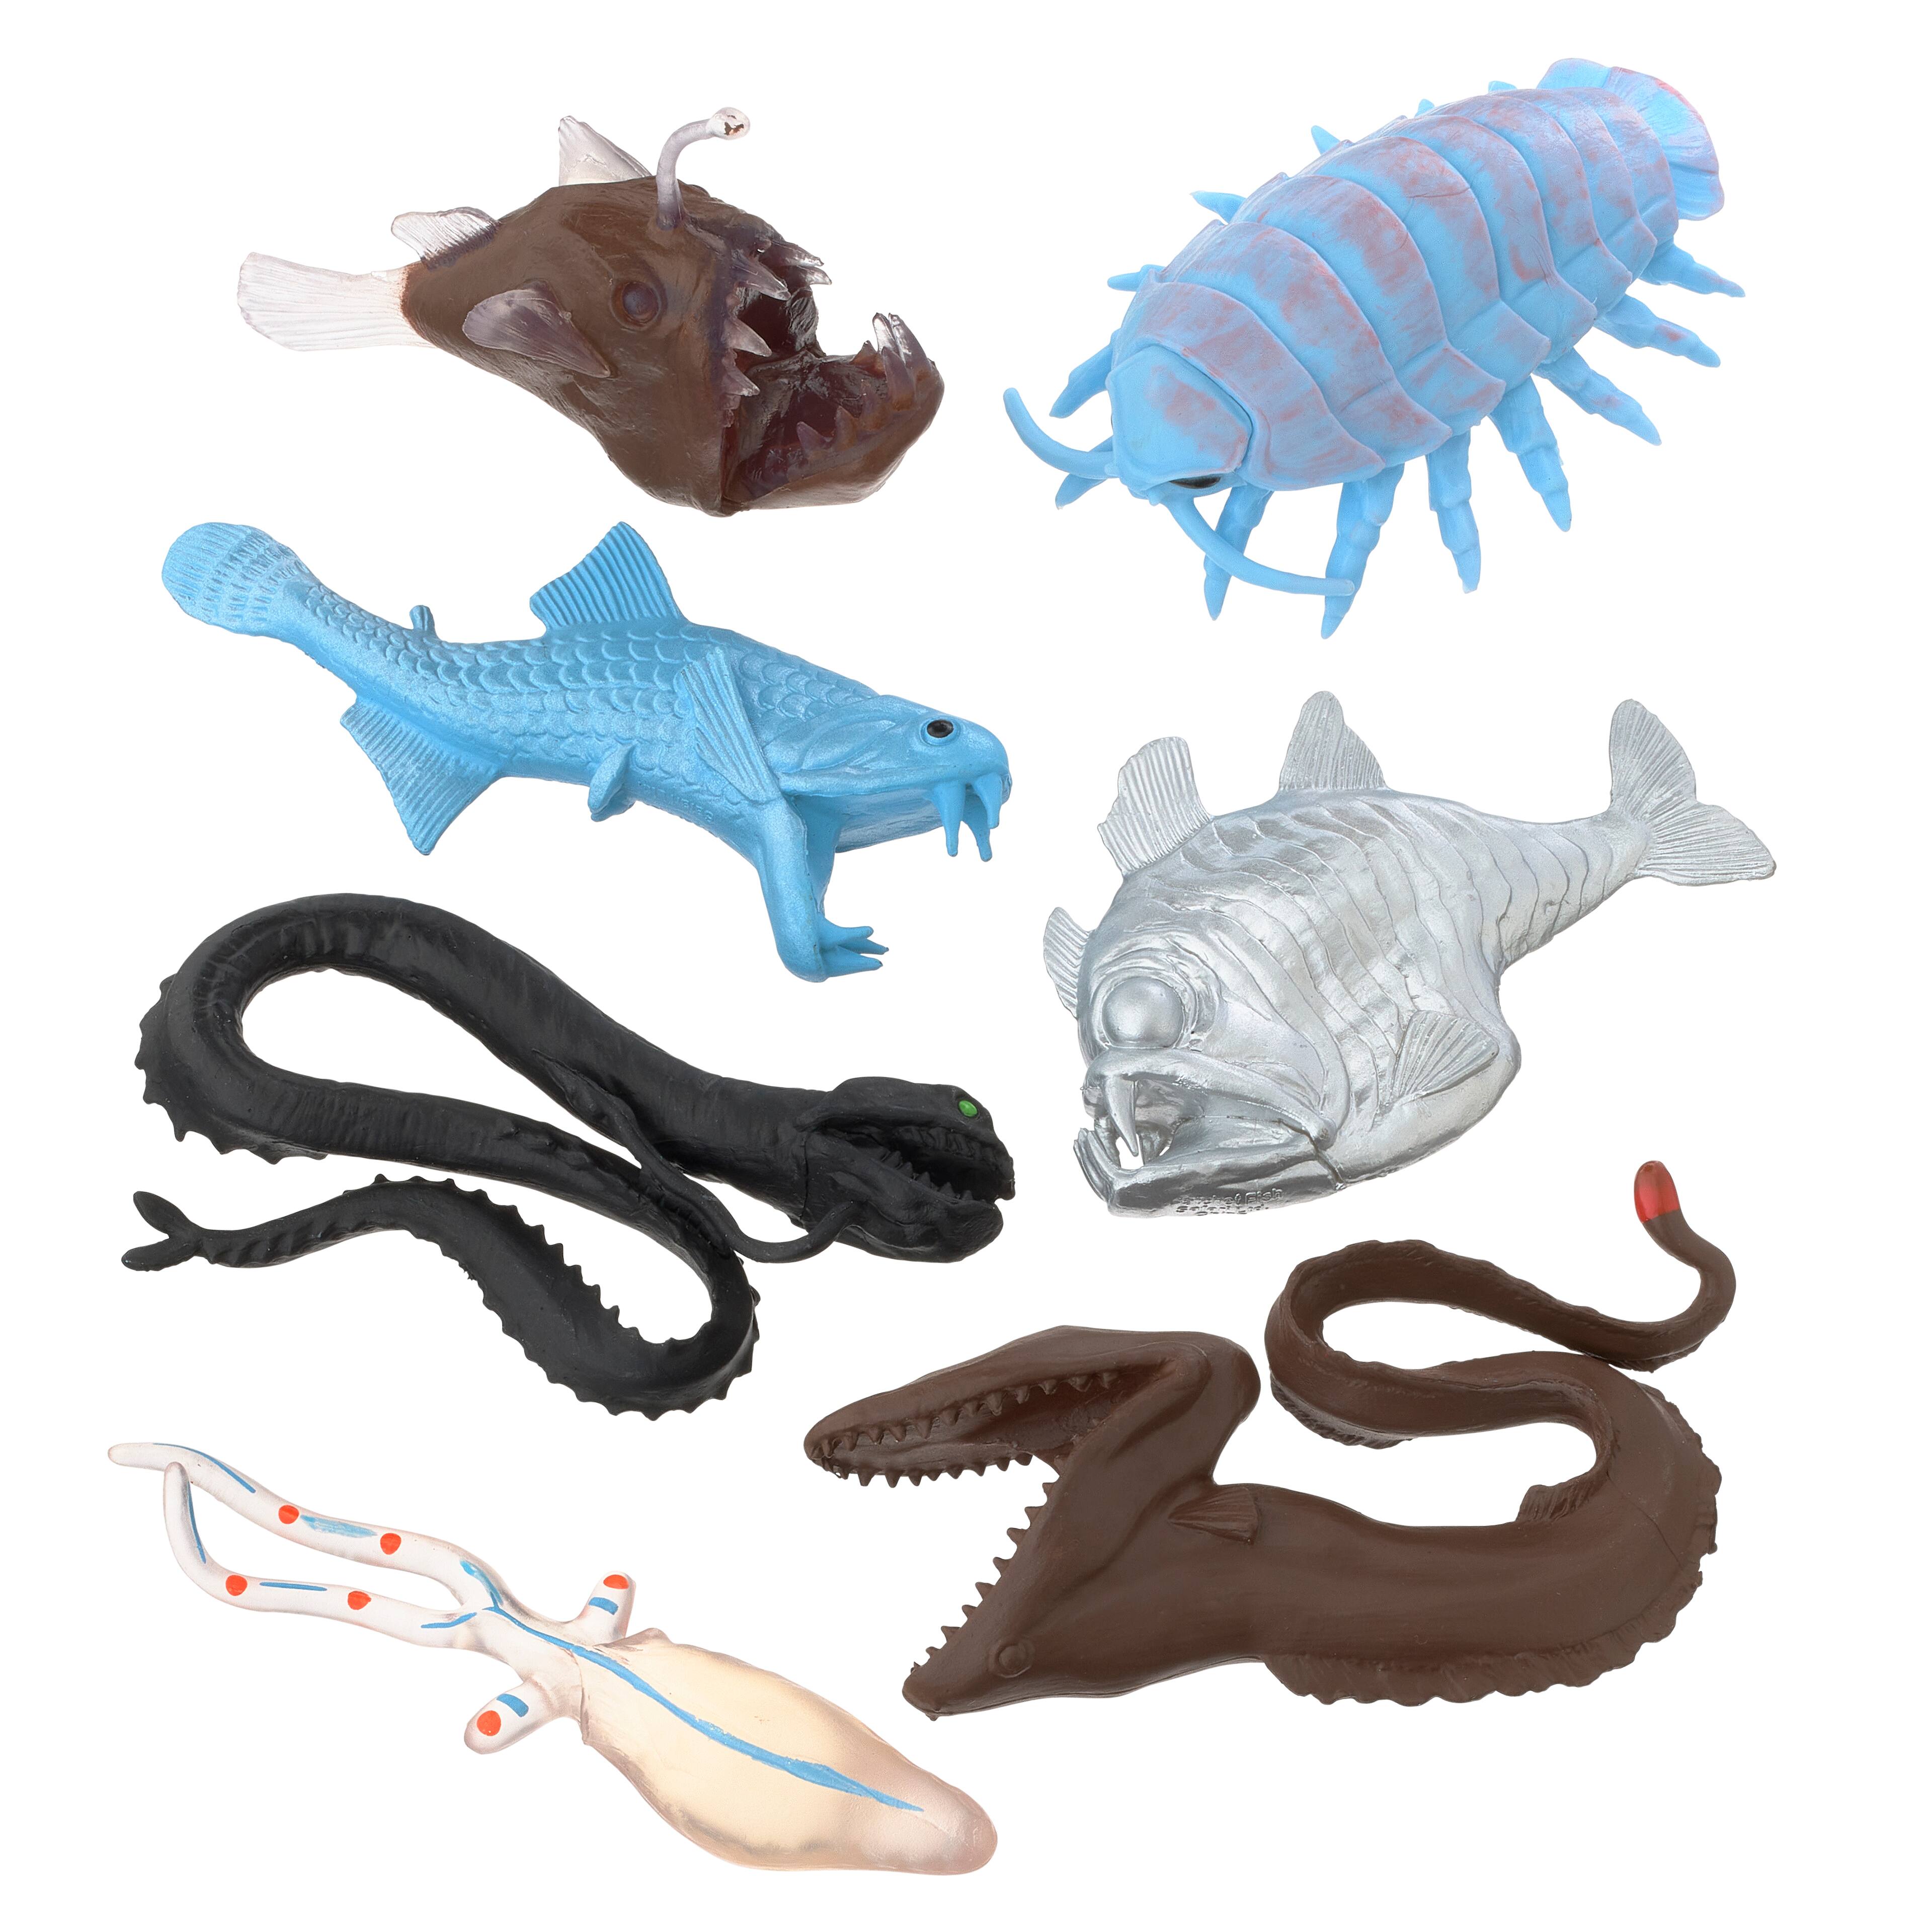 Buy in Bulk - 12 Pack: Safari Ltd® TOOBS® Deep Sea Creatures Set